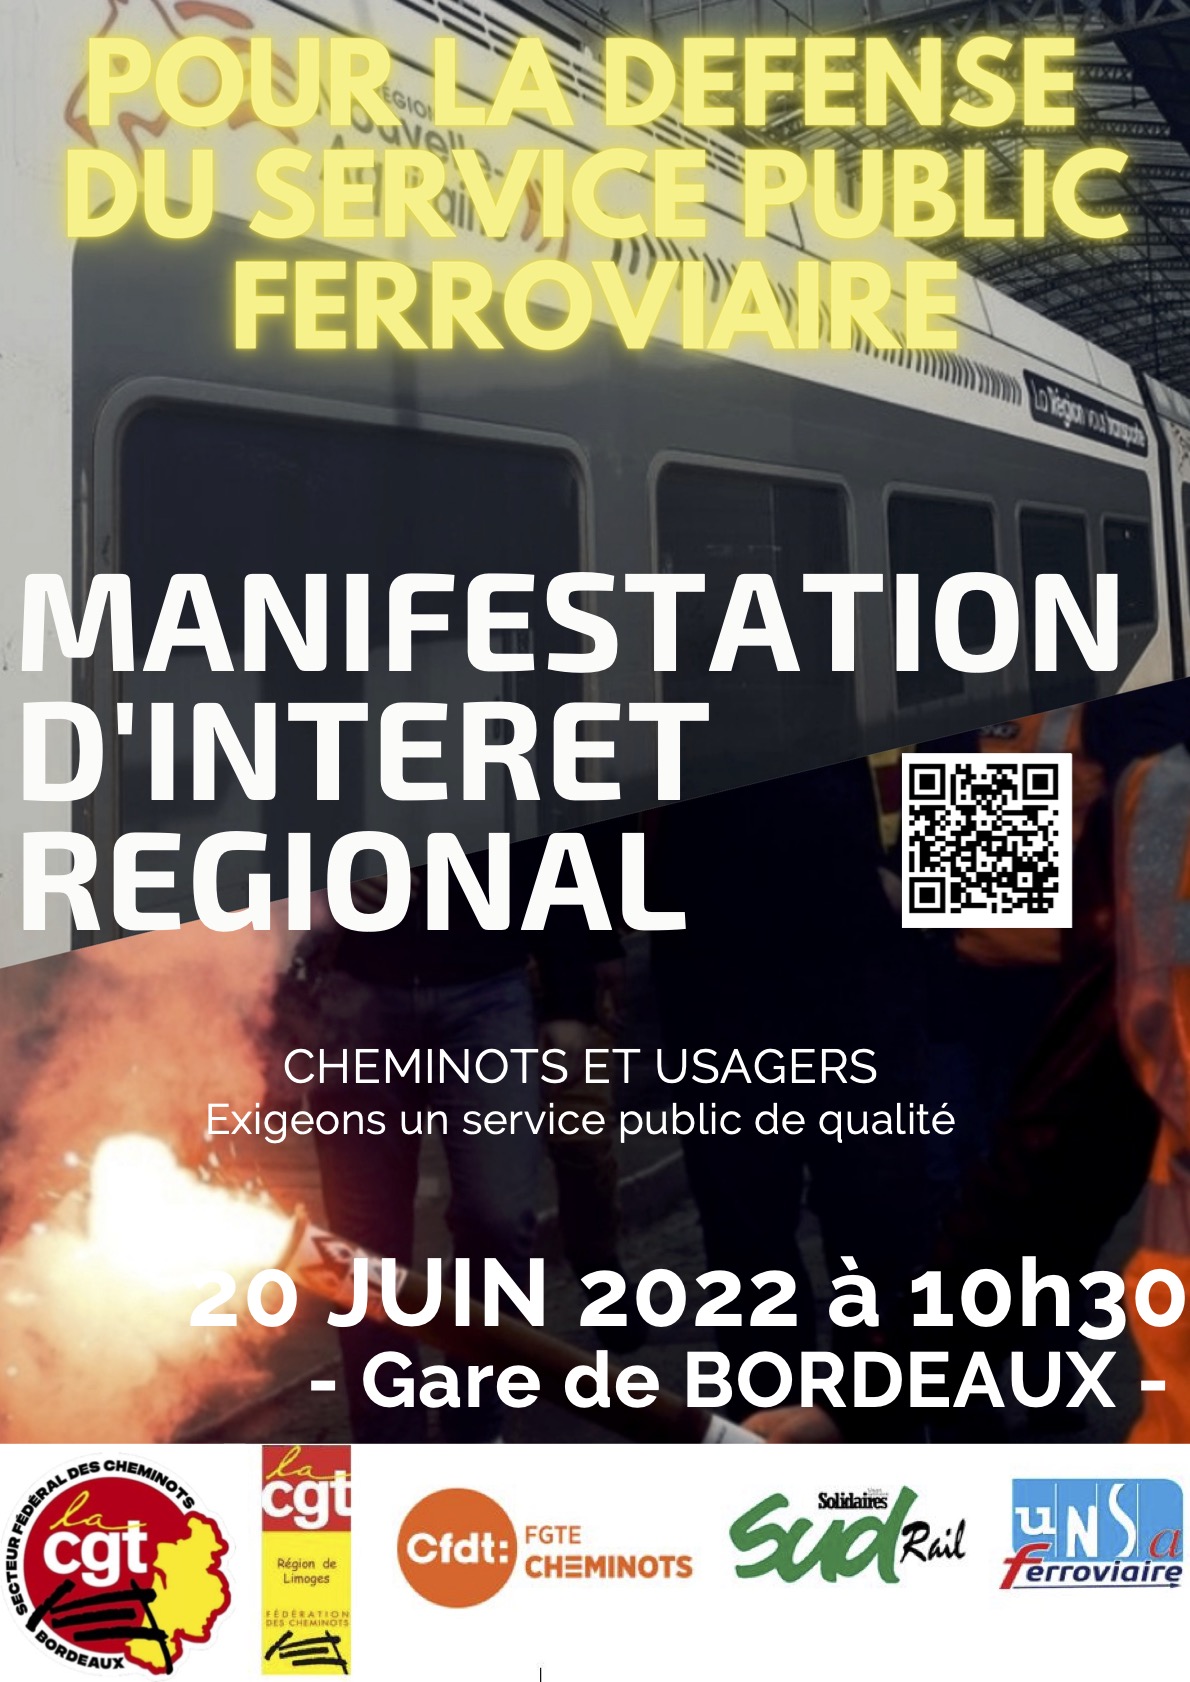 Le 20 juin 2022 à 10h30, manifestation régionale en gare de Bordeaux pour le service public ferroviaire